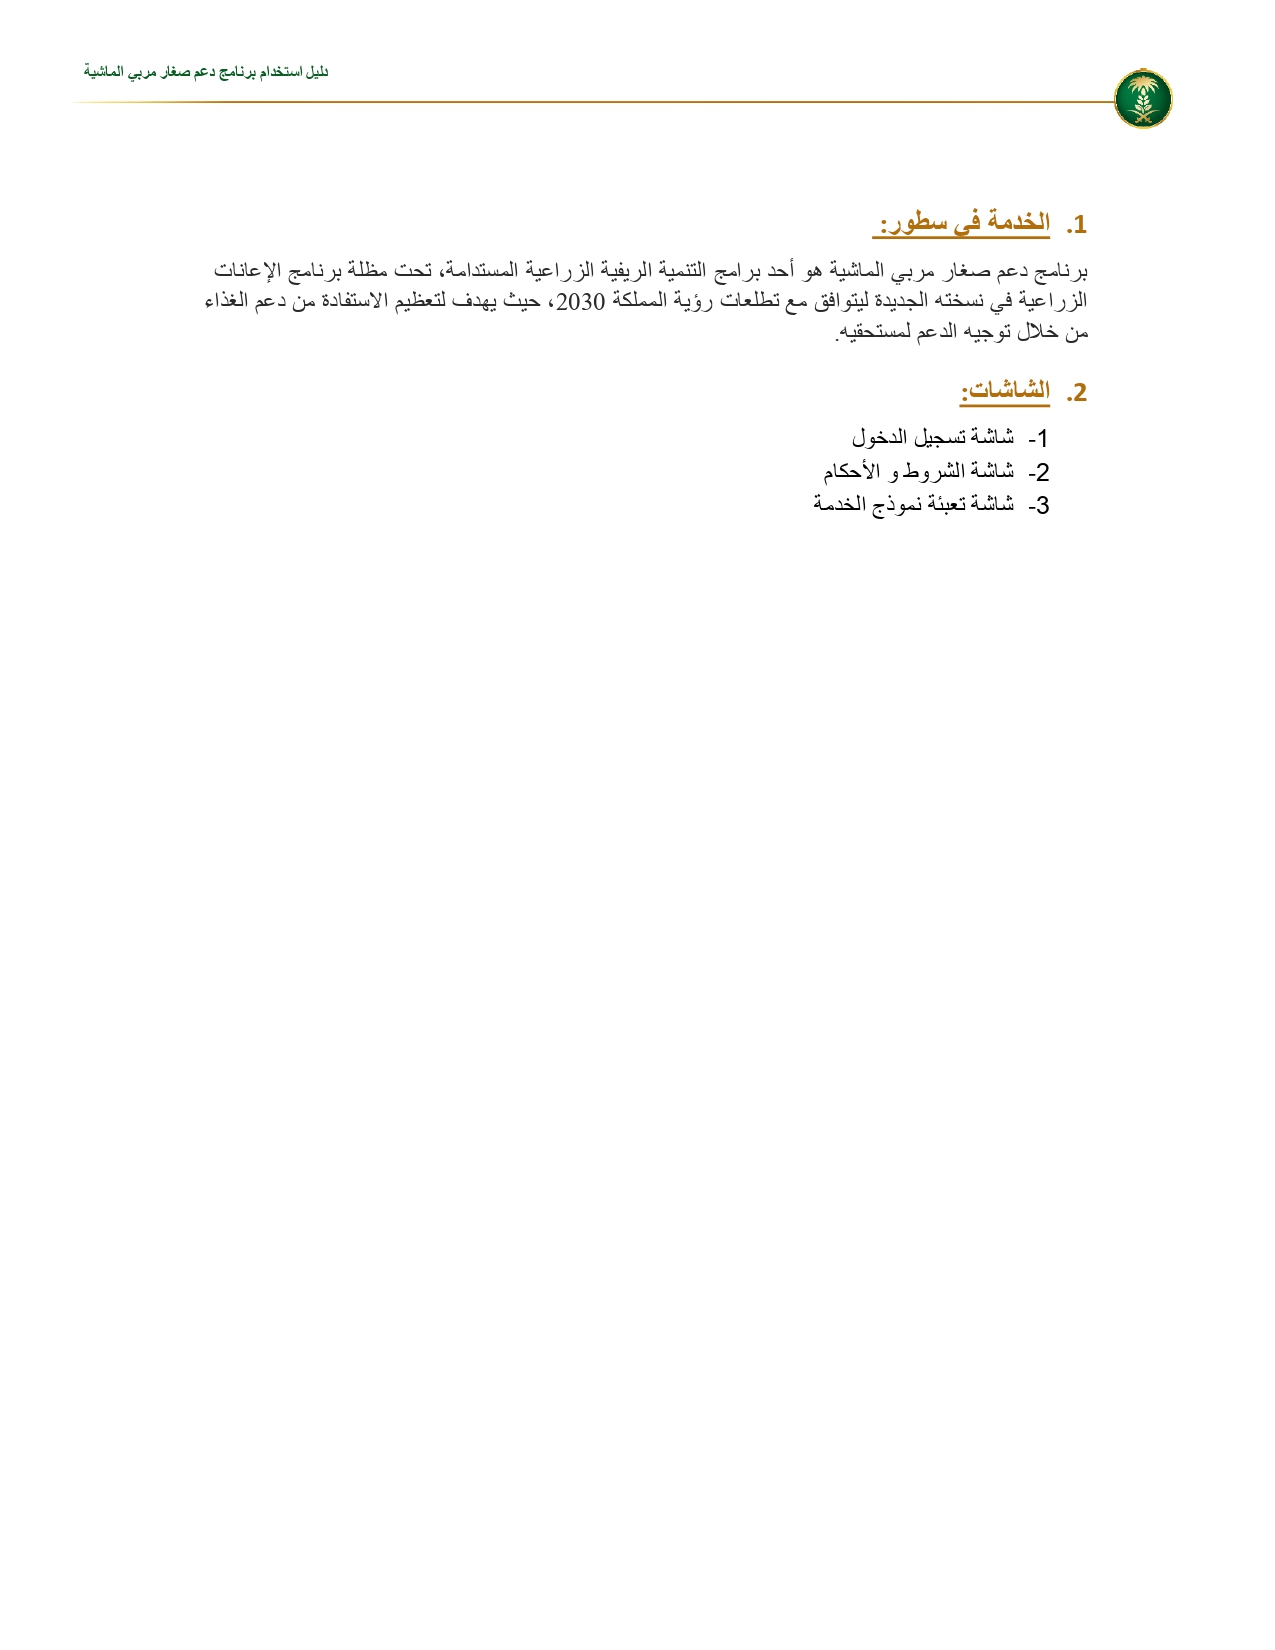 تسجيل دعم الثروة الحيوانية السعودية ، Mewa Gov Sa ، من خلال وزارة البيئة والمياه الزراعية